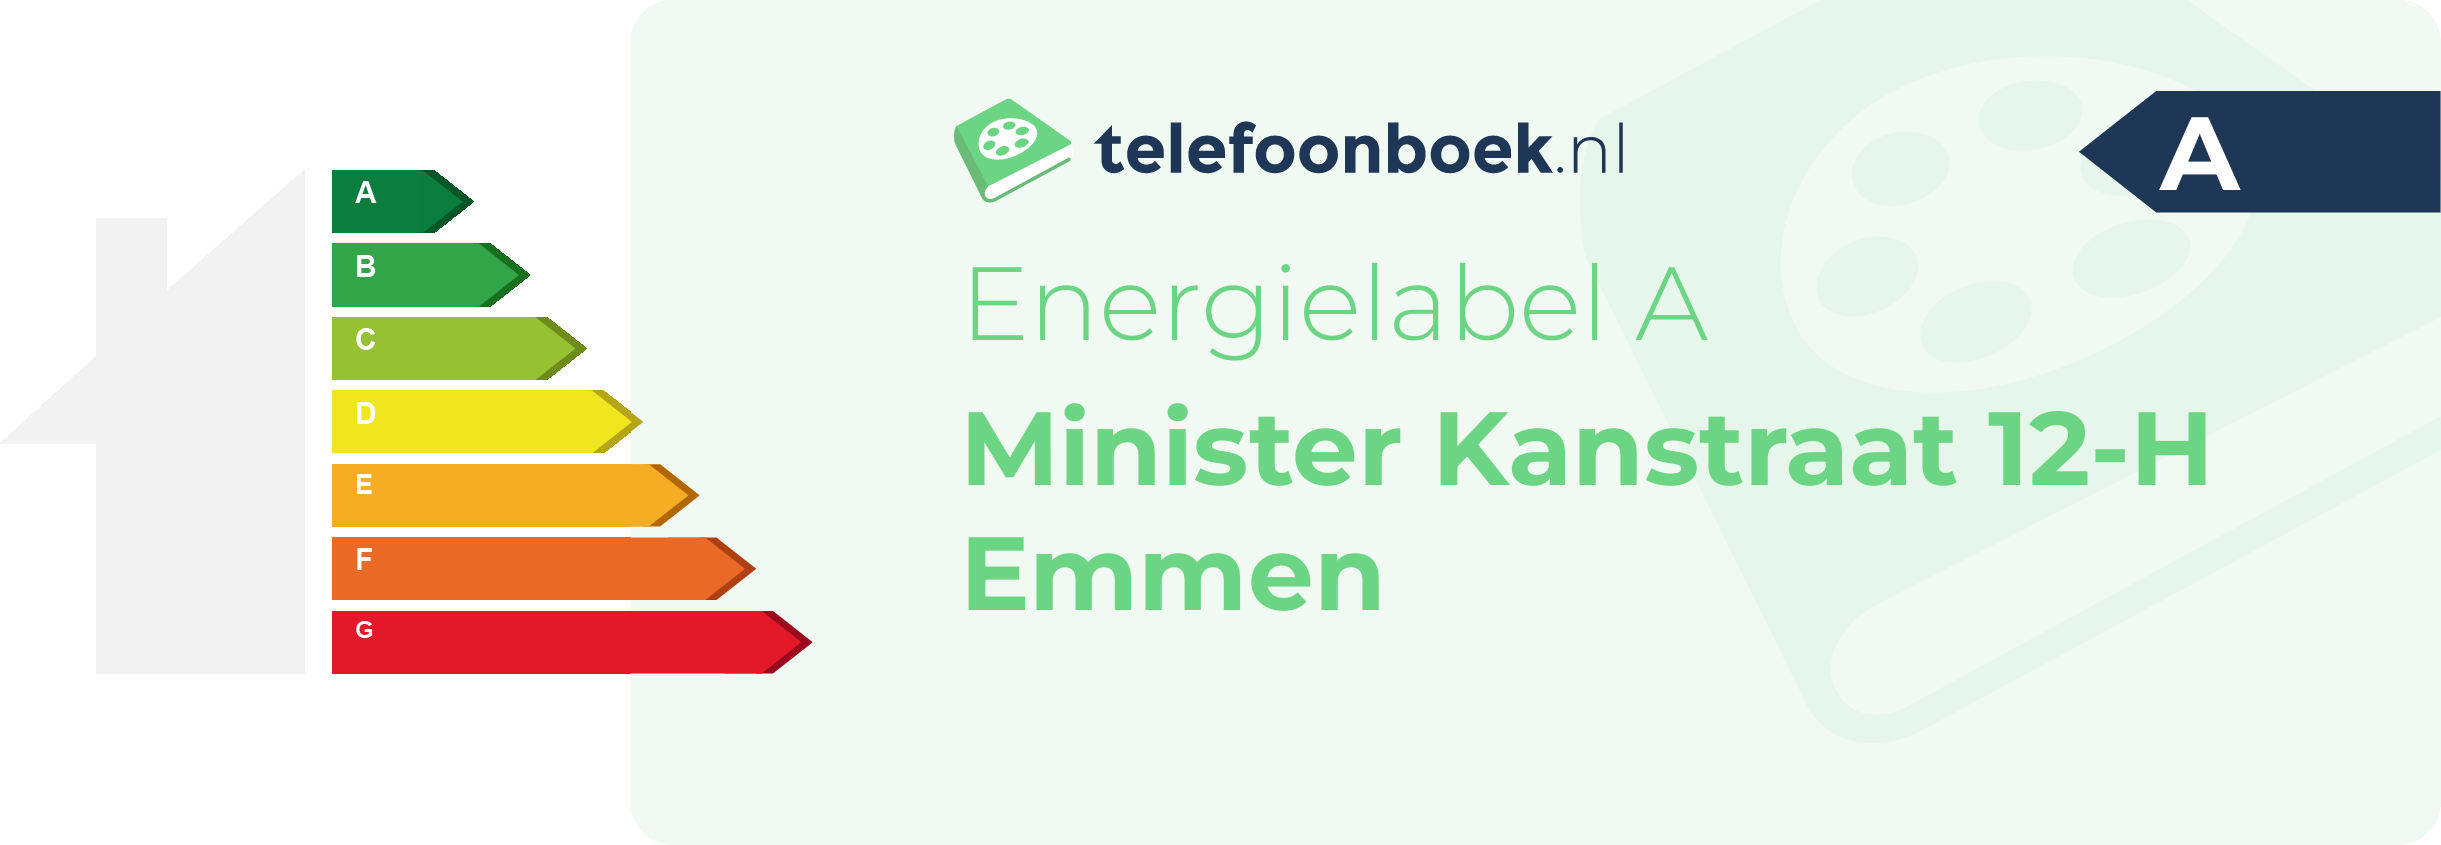 Energielabel Minister Kanstraat 12-H Emmen